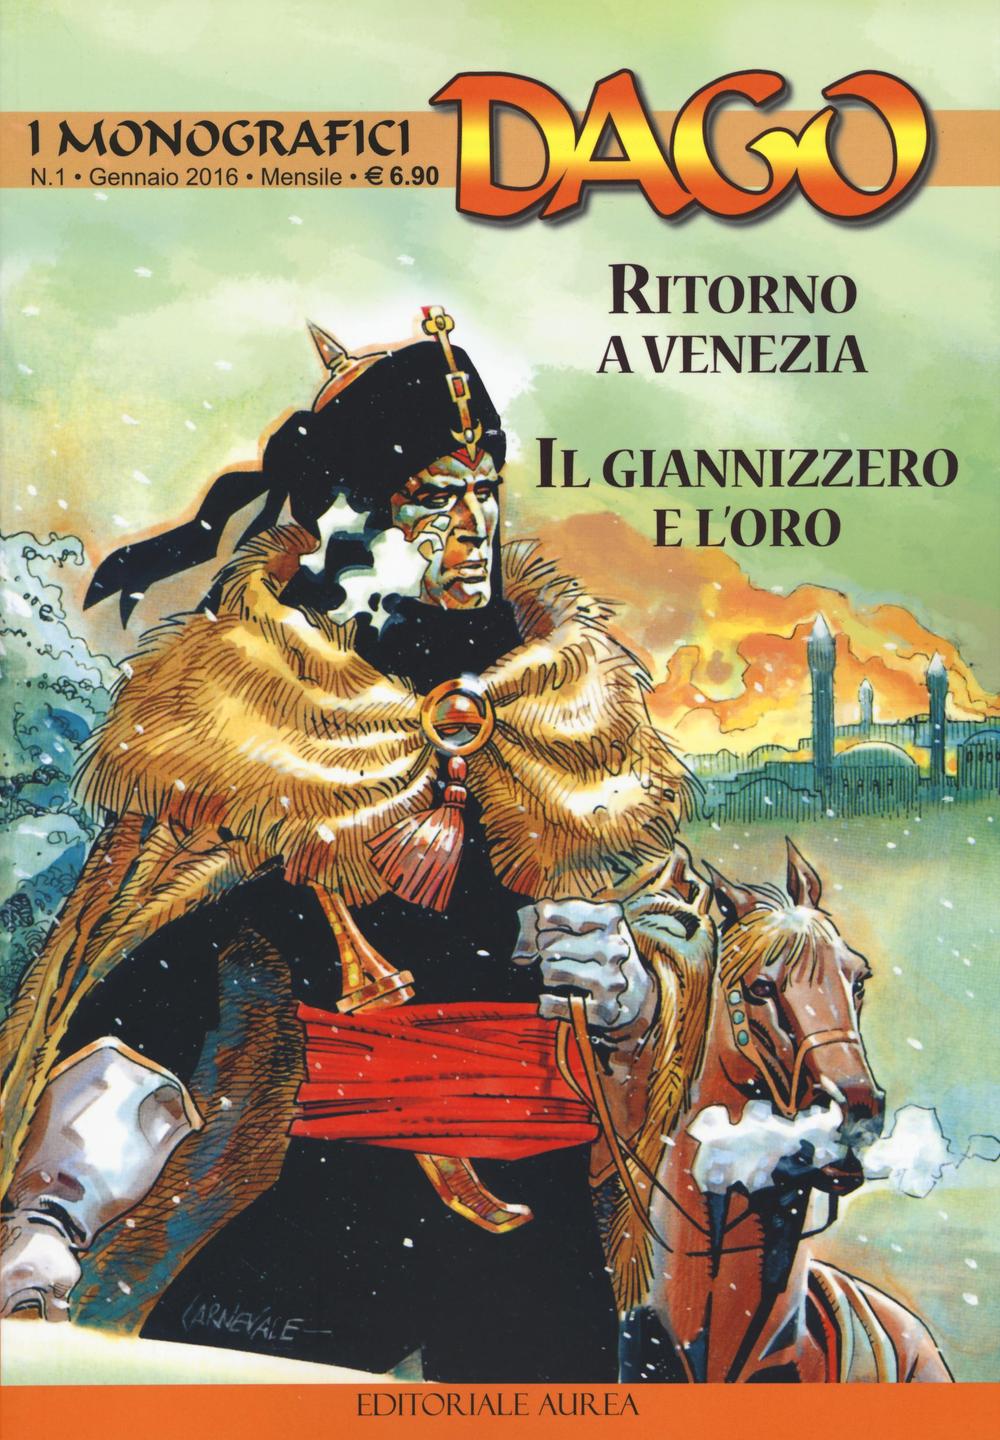 I monografici Dago. Vol. 1: Ritorno a Venezia-Il Giannizzero e L'oro